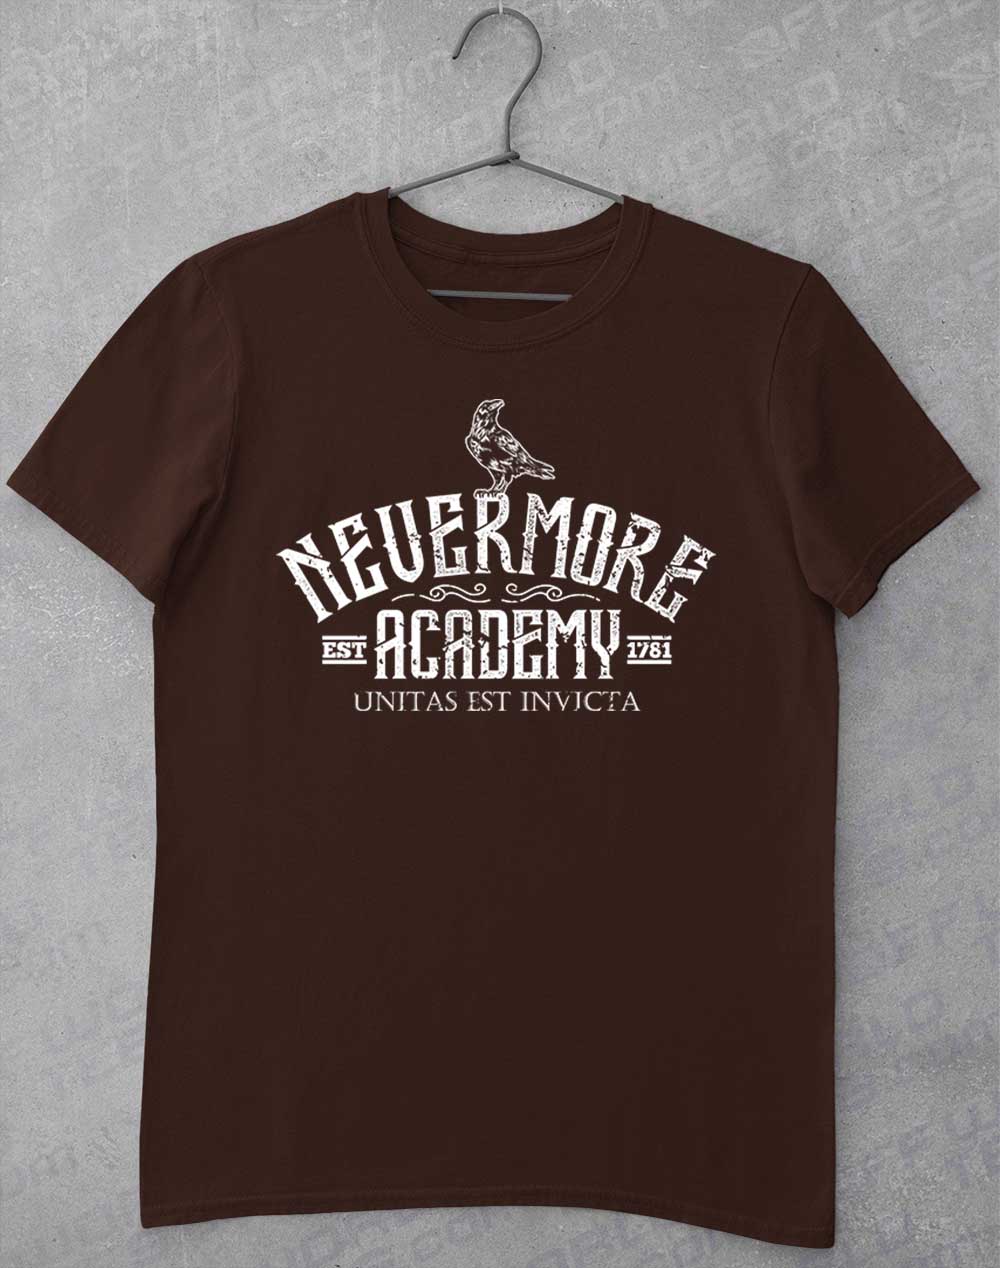 Dark Chocolate - Nevermore Academy T-Shirt